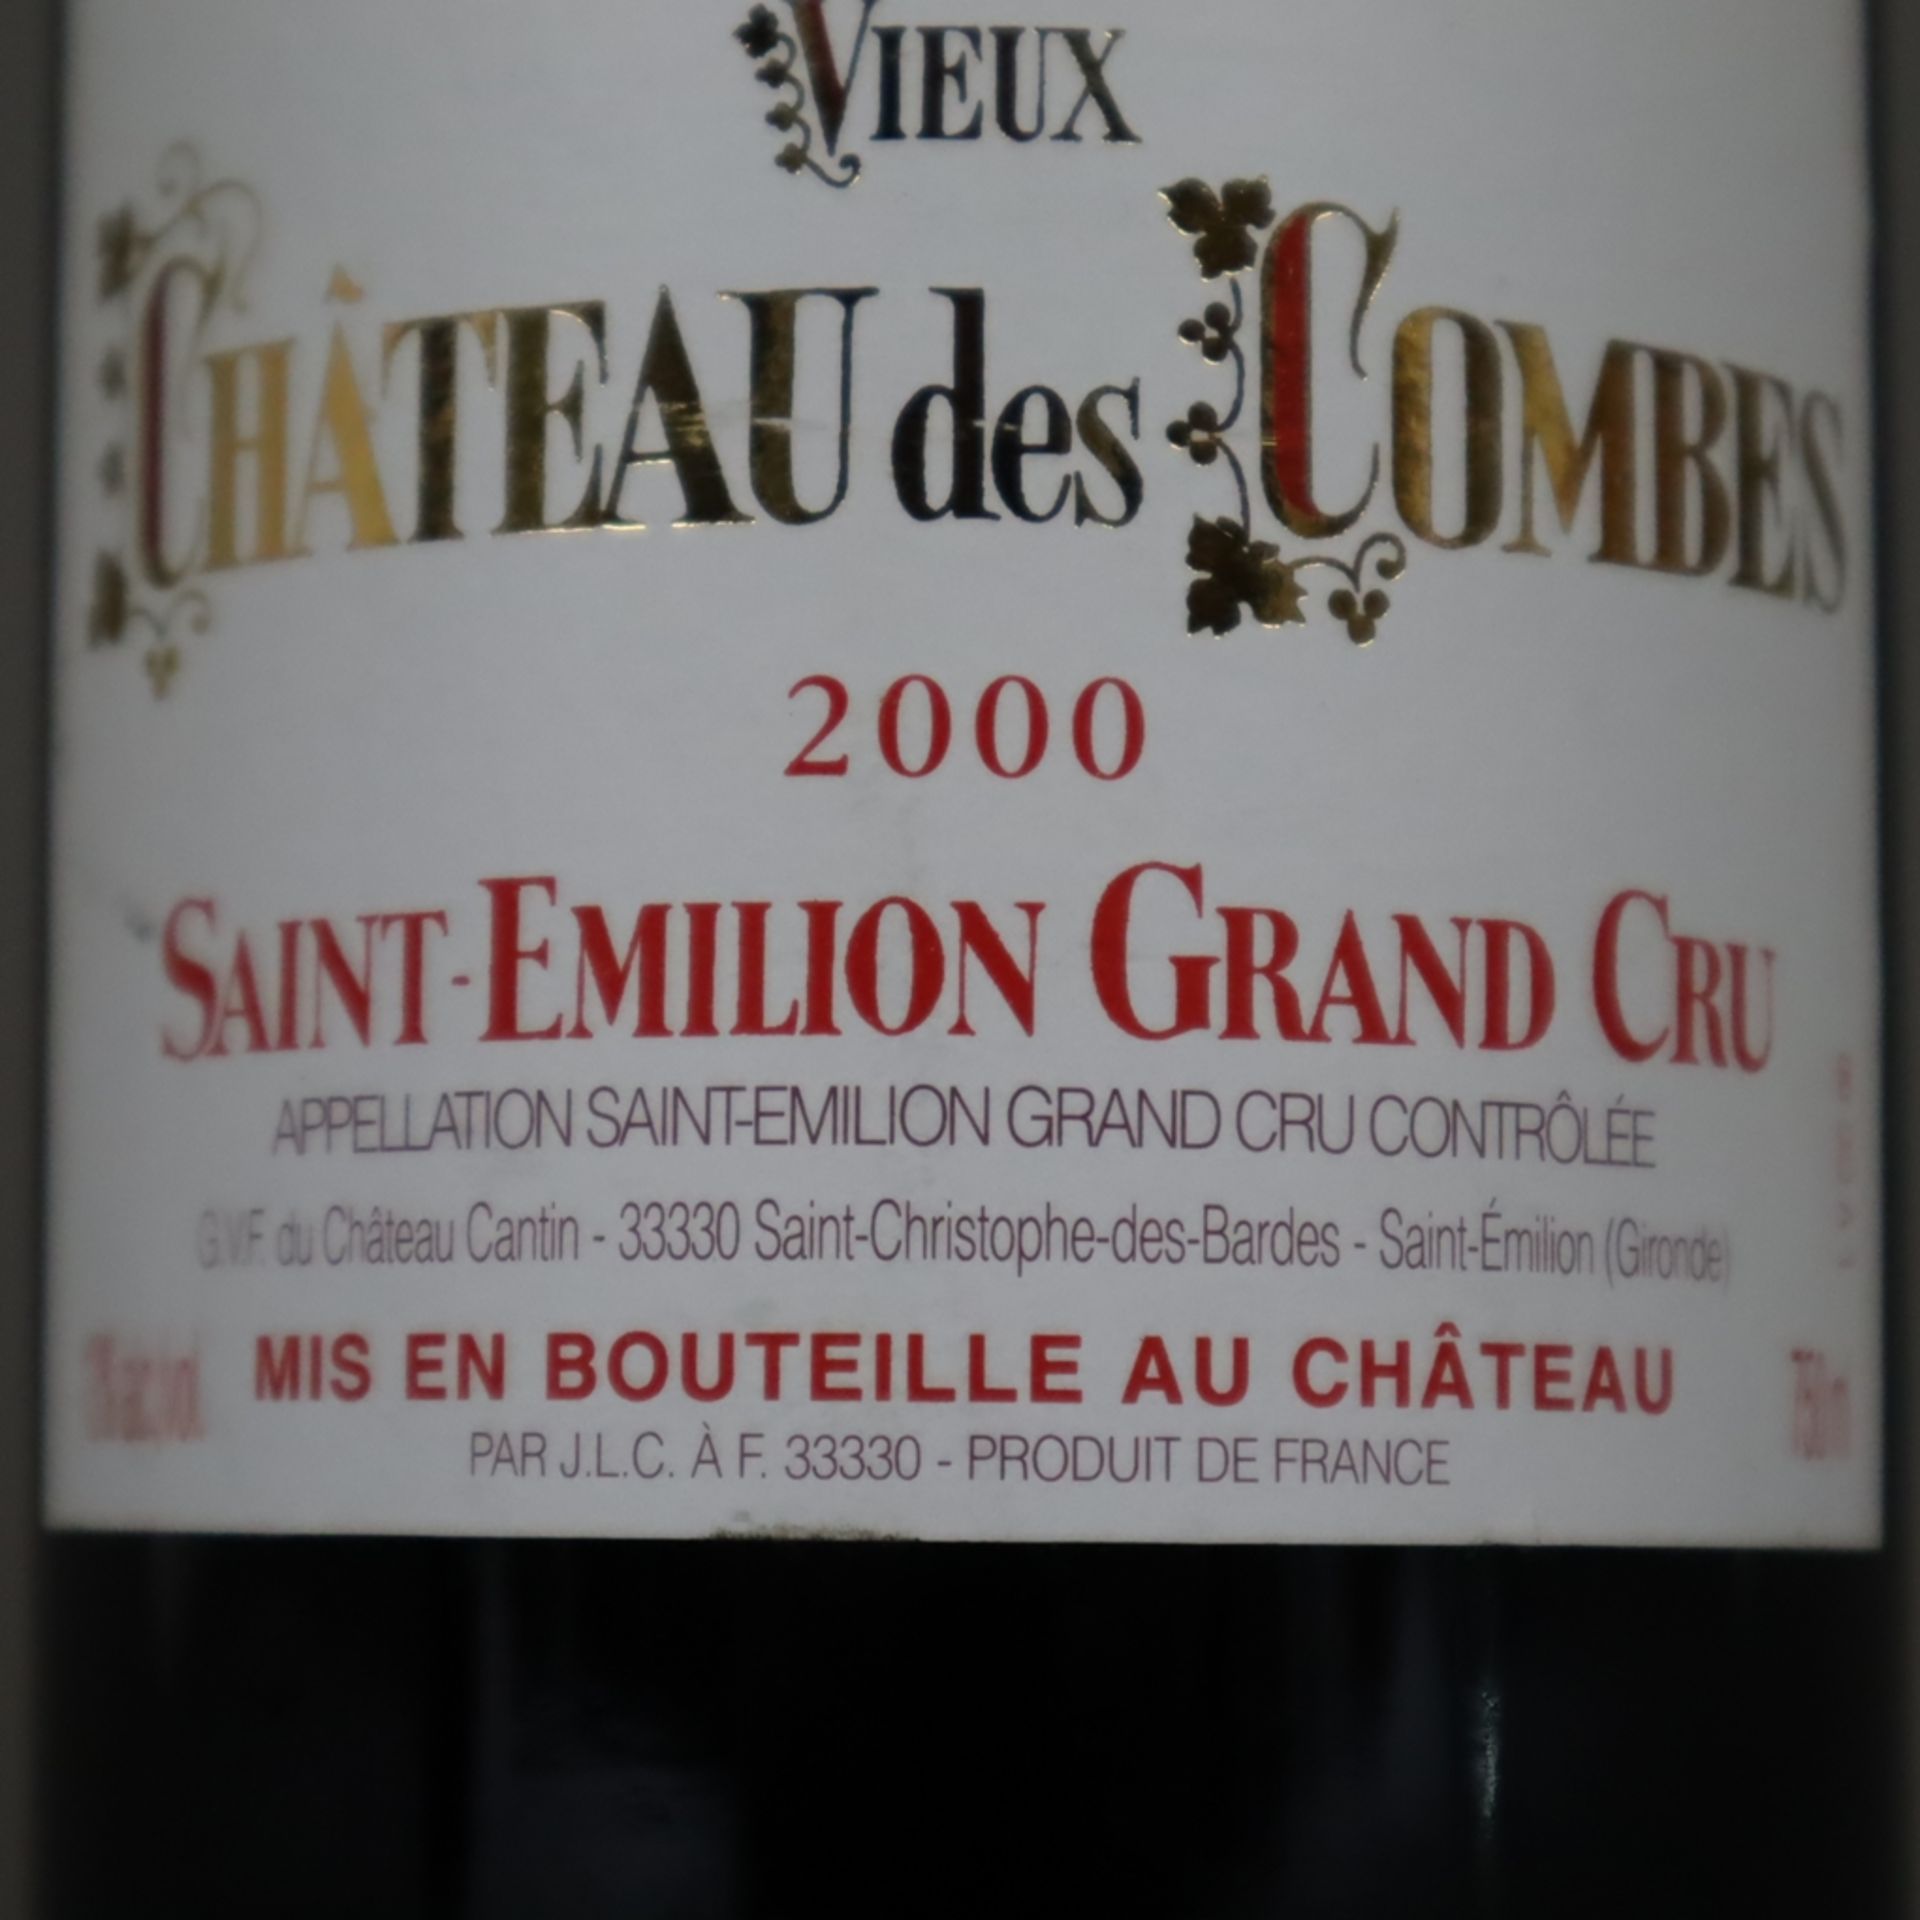 Weinkonvolut - 2 Flaschen, Vieux Château des Combes, Saint-Émilion Grand Cru 2000, jeweils 0,7 Lite - Bild 5 aus 6